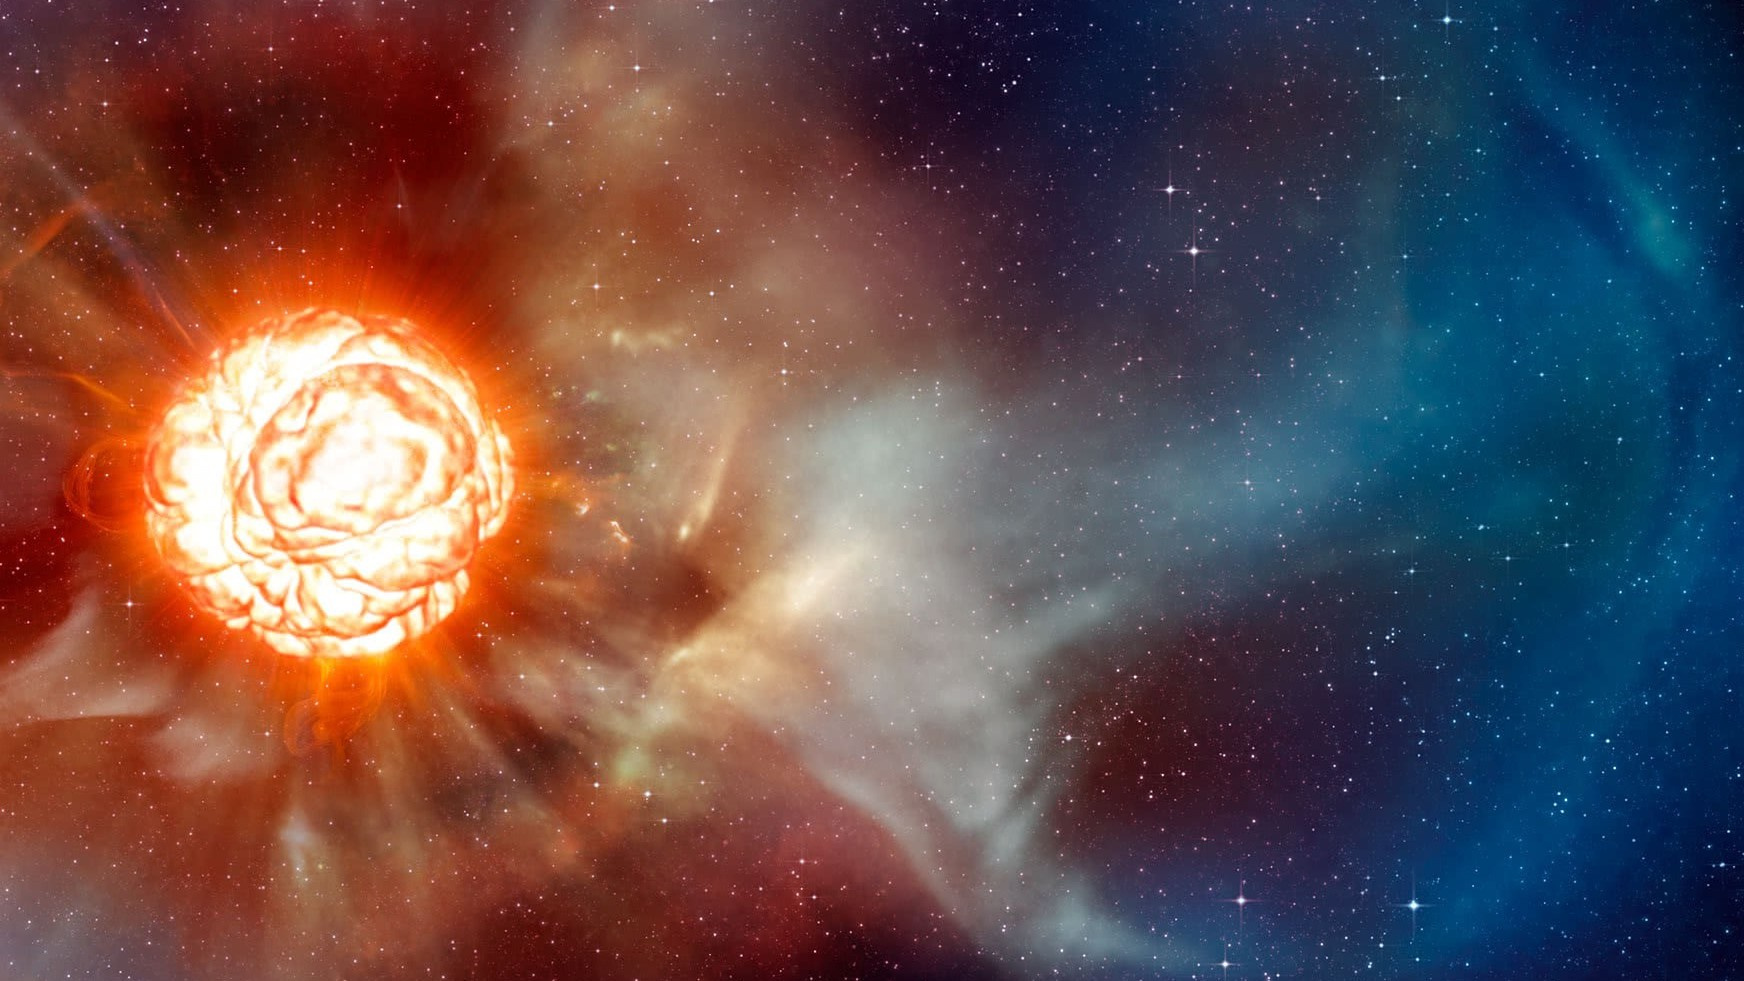 Fotoğrafta, Orion Takımyıldızı içerisinde bulunan ve bizden 643 ışık yılı uzaktaki Betelgeuse yıldızının süpernovaya patlaması canlandırılmaktadır. Bir sanatçı tarafından yapılan bu çizimde, Güneş'ten ortalama 14 kat büyük olan yıldızın patlaması sonucu etrafa saçılan maddeler görülmektedir. Eğer Betelgeuse bugün patlayacak olsa, gökyüzünde dolunaydan daha büyük bir şekilde gözükürdü ve gündüzleri bile görülür olurdu!